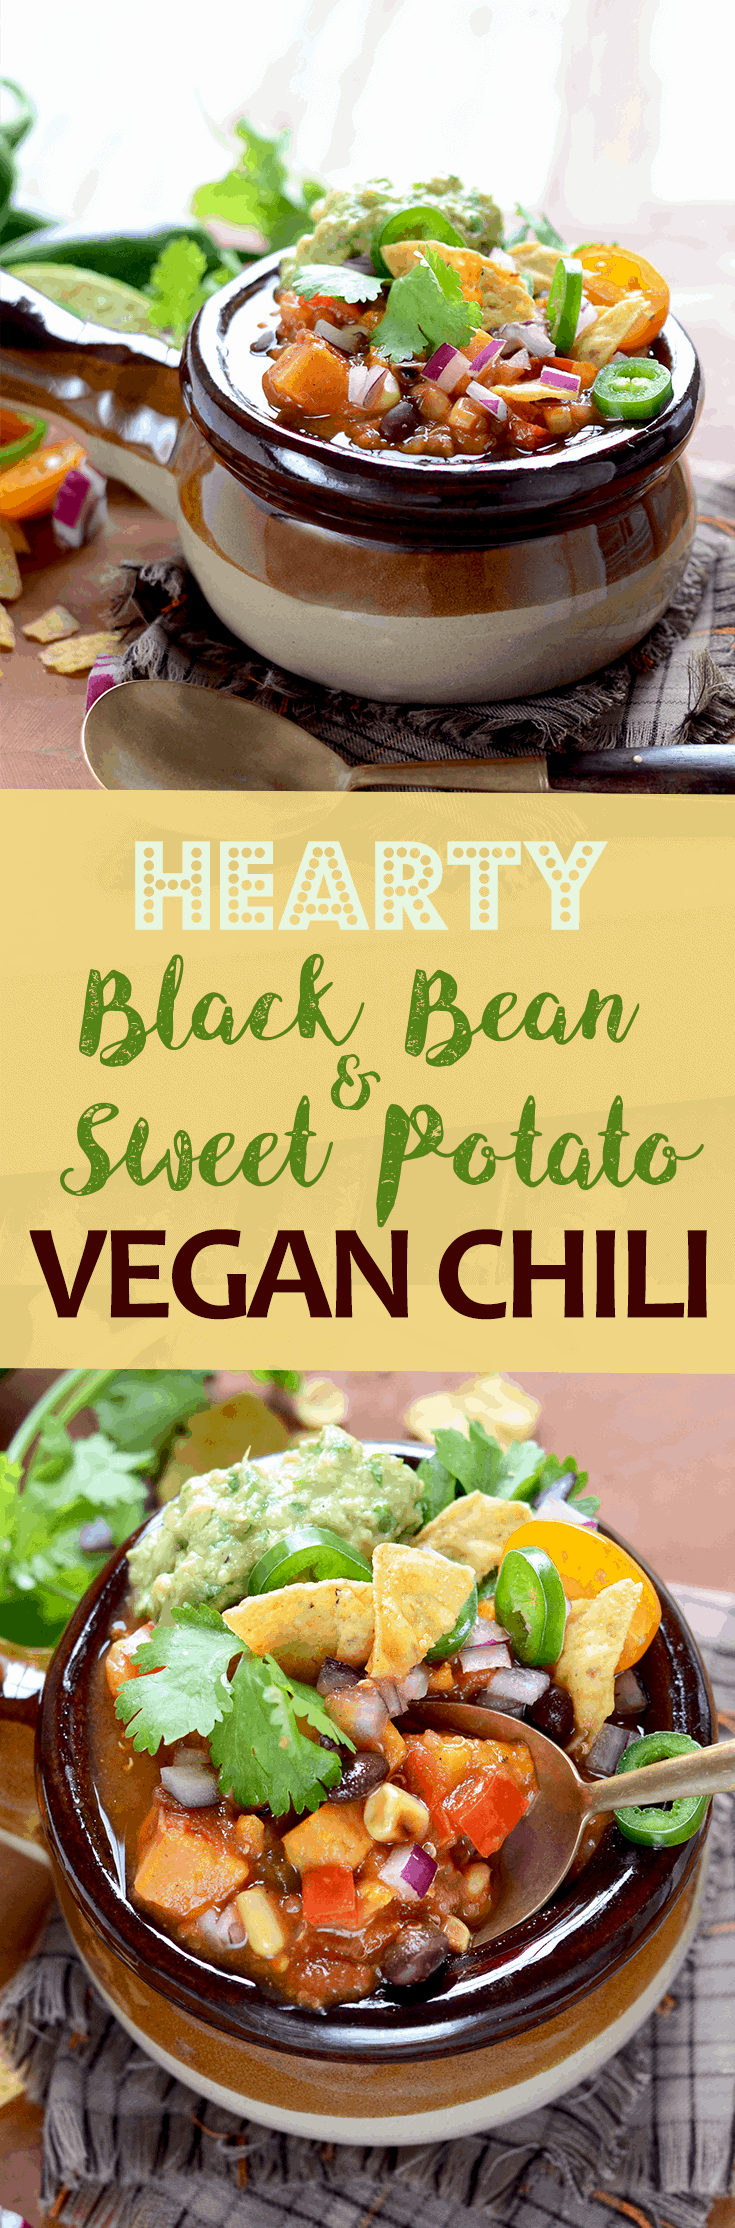 Vegan Chili Pin - Vegan Sweet Potato Chili with Black Beans and Quinoa